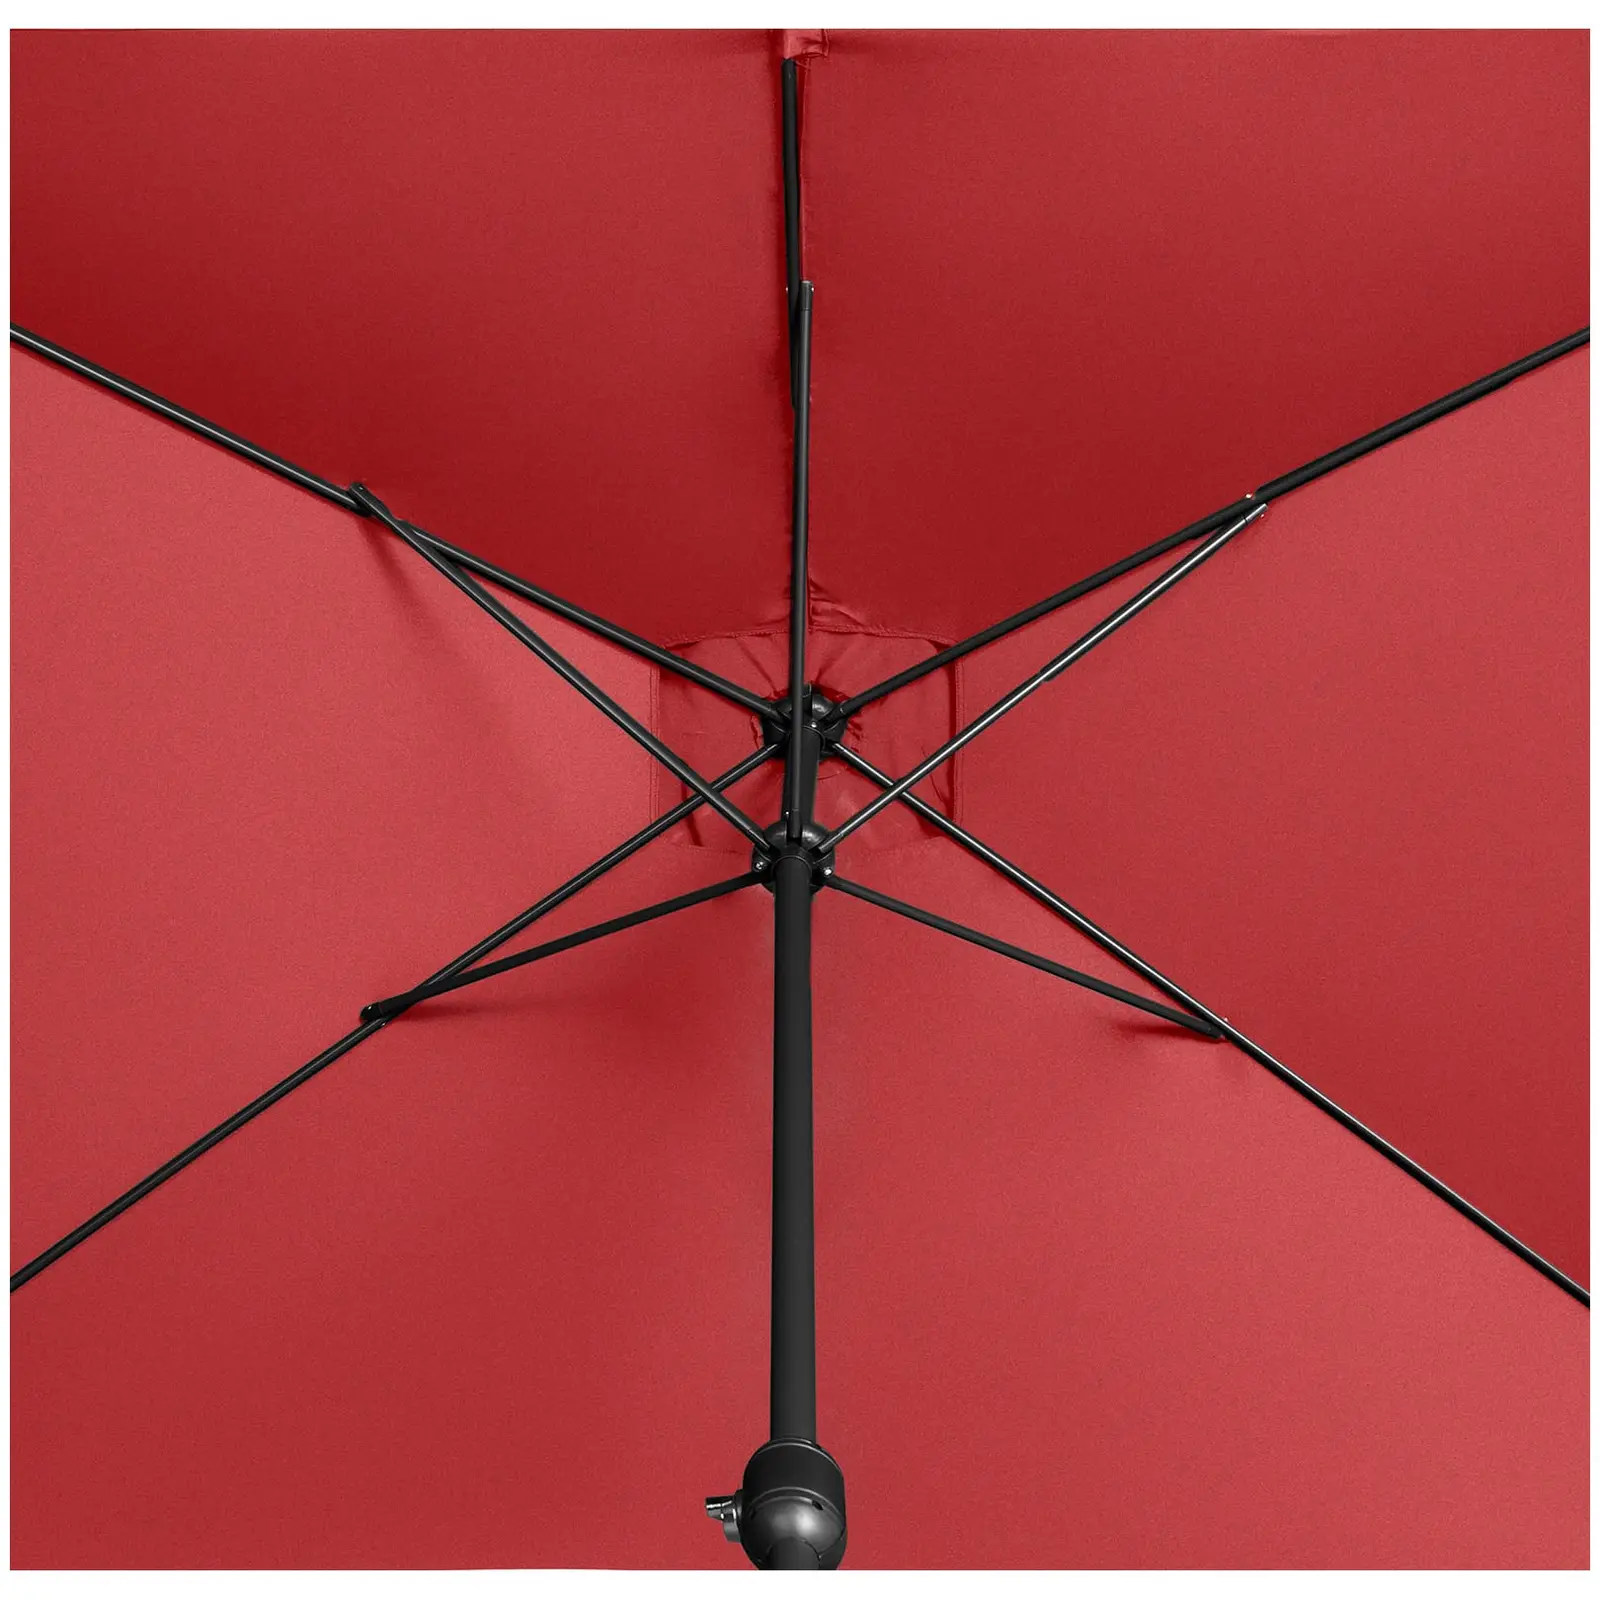 B-varer Stor parasoll - burgunder - rektangulær - 200 x 300 cm